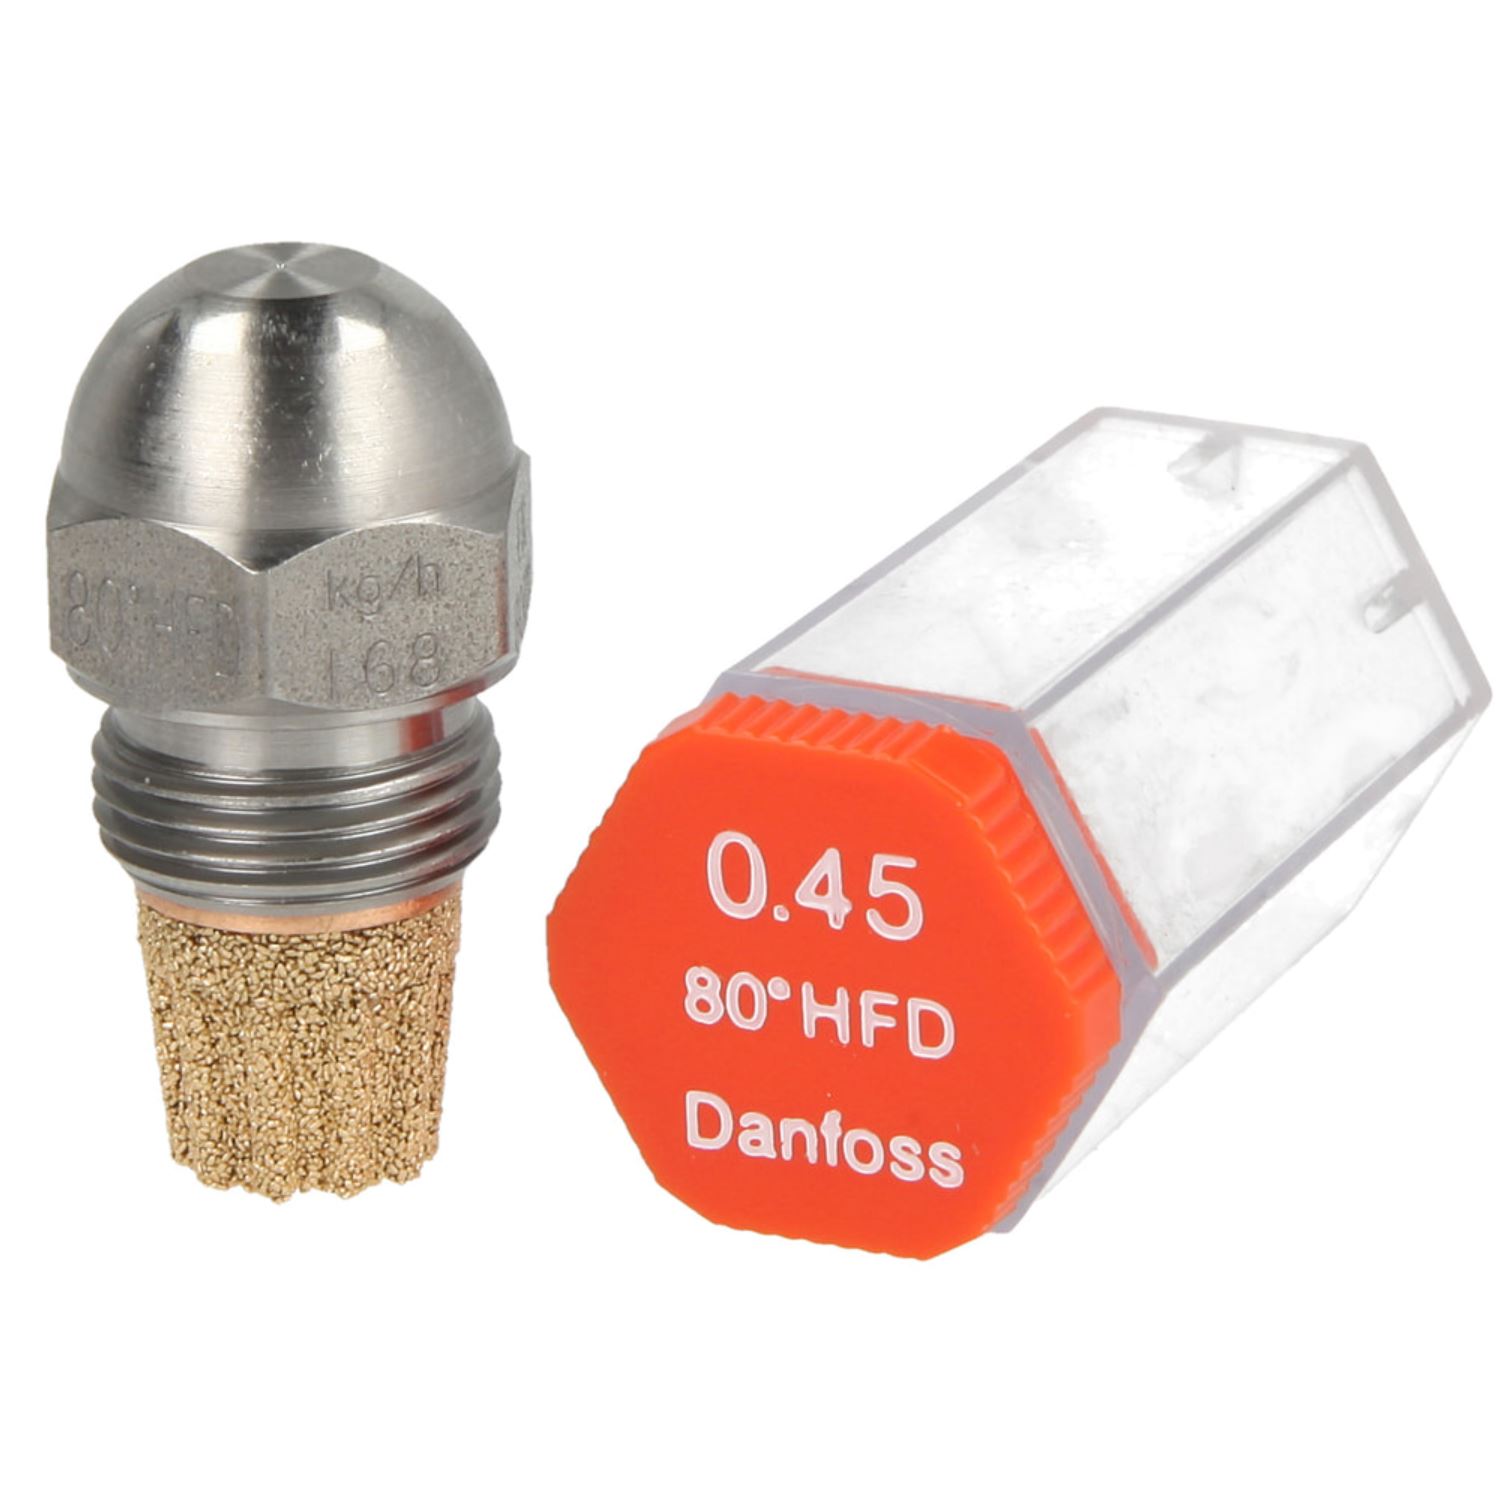 Danfoss-Öldüse 0,45 80°HF-D